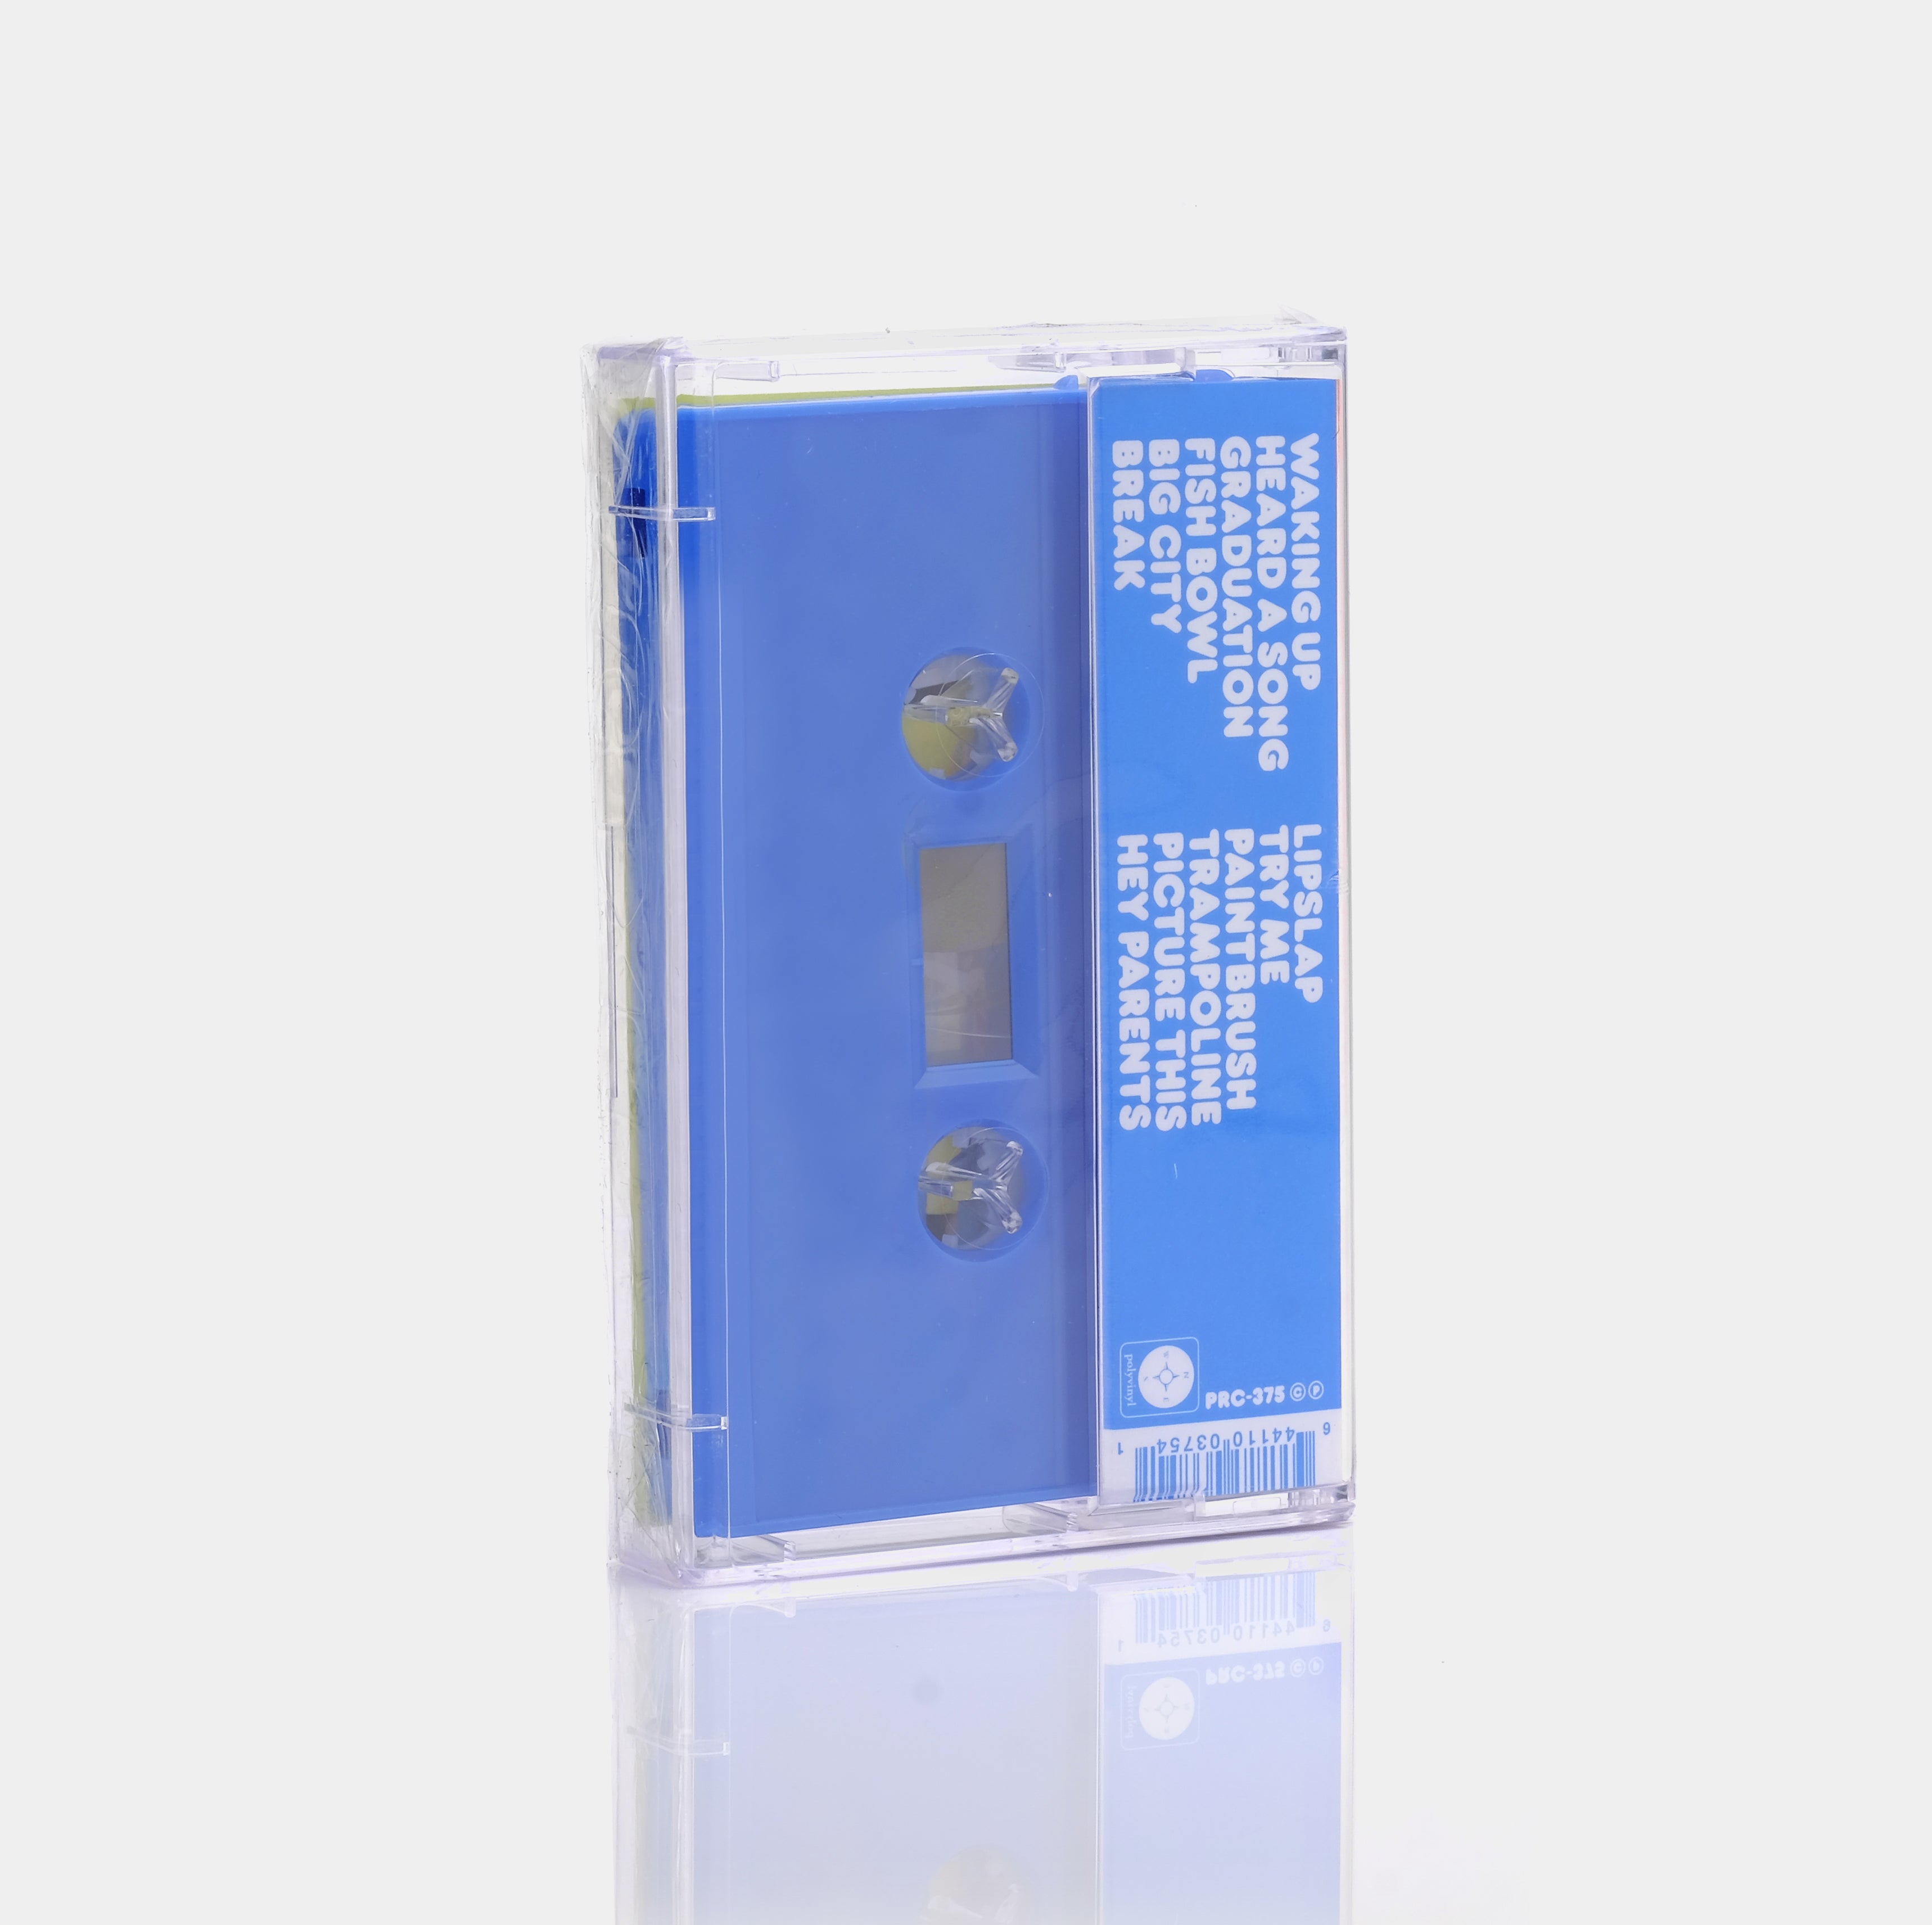 Kero Kero Bonito - Bonito Generation Cassette Tape